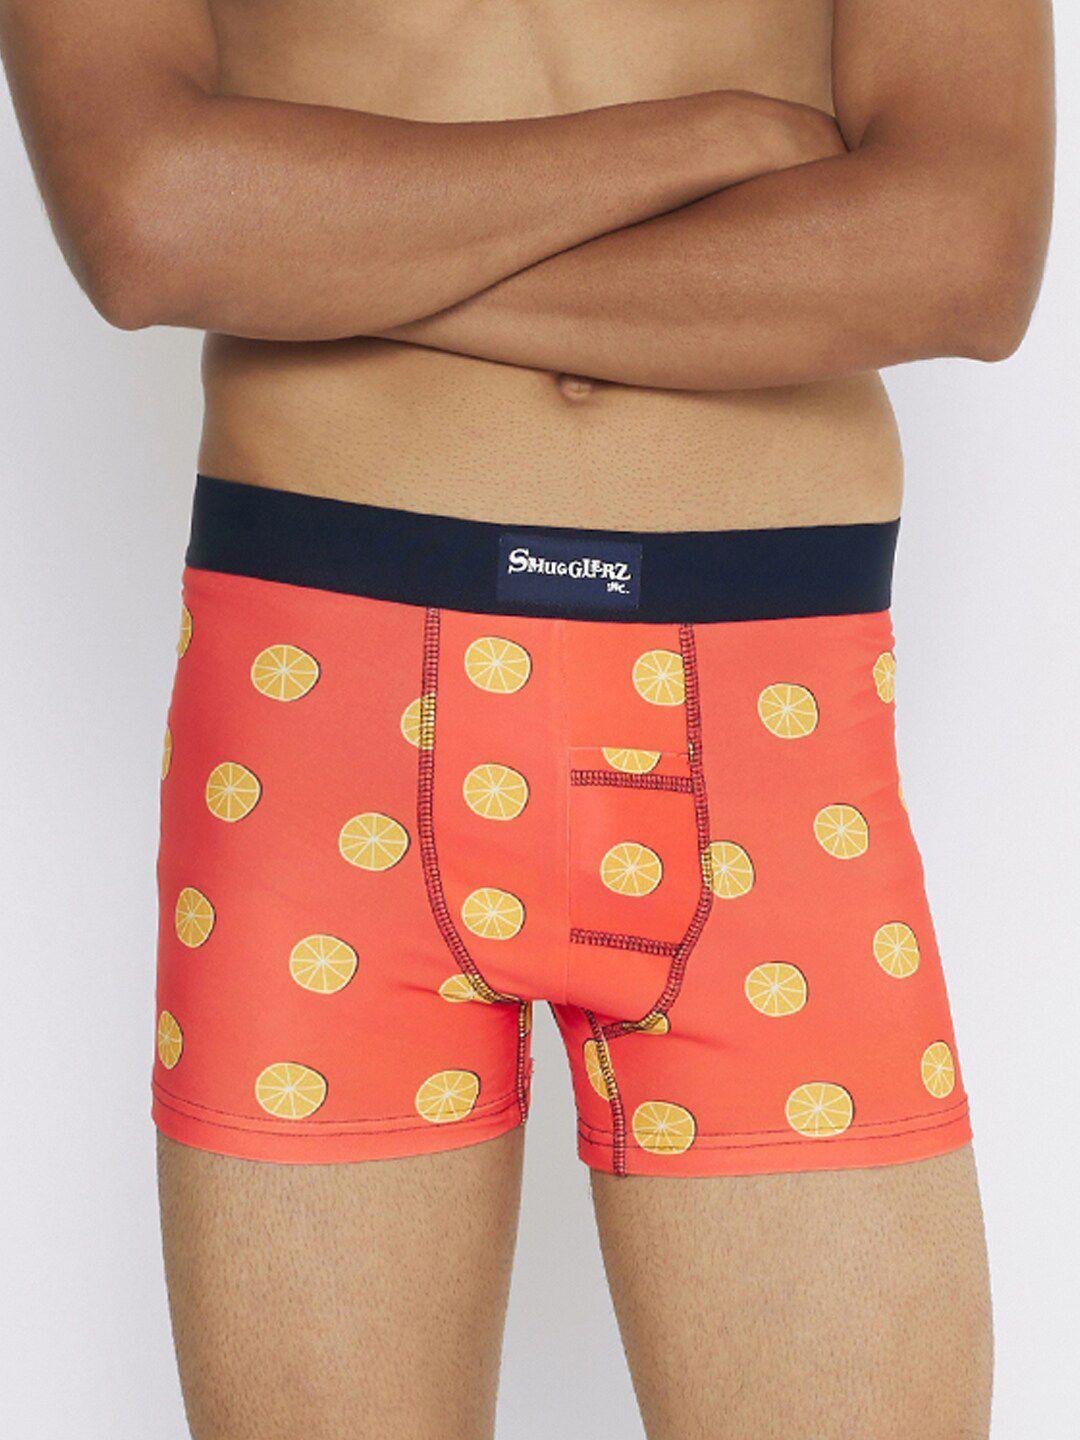 smugglerz printed short trunks get-squeezin-orange-men's smundies